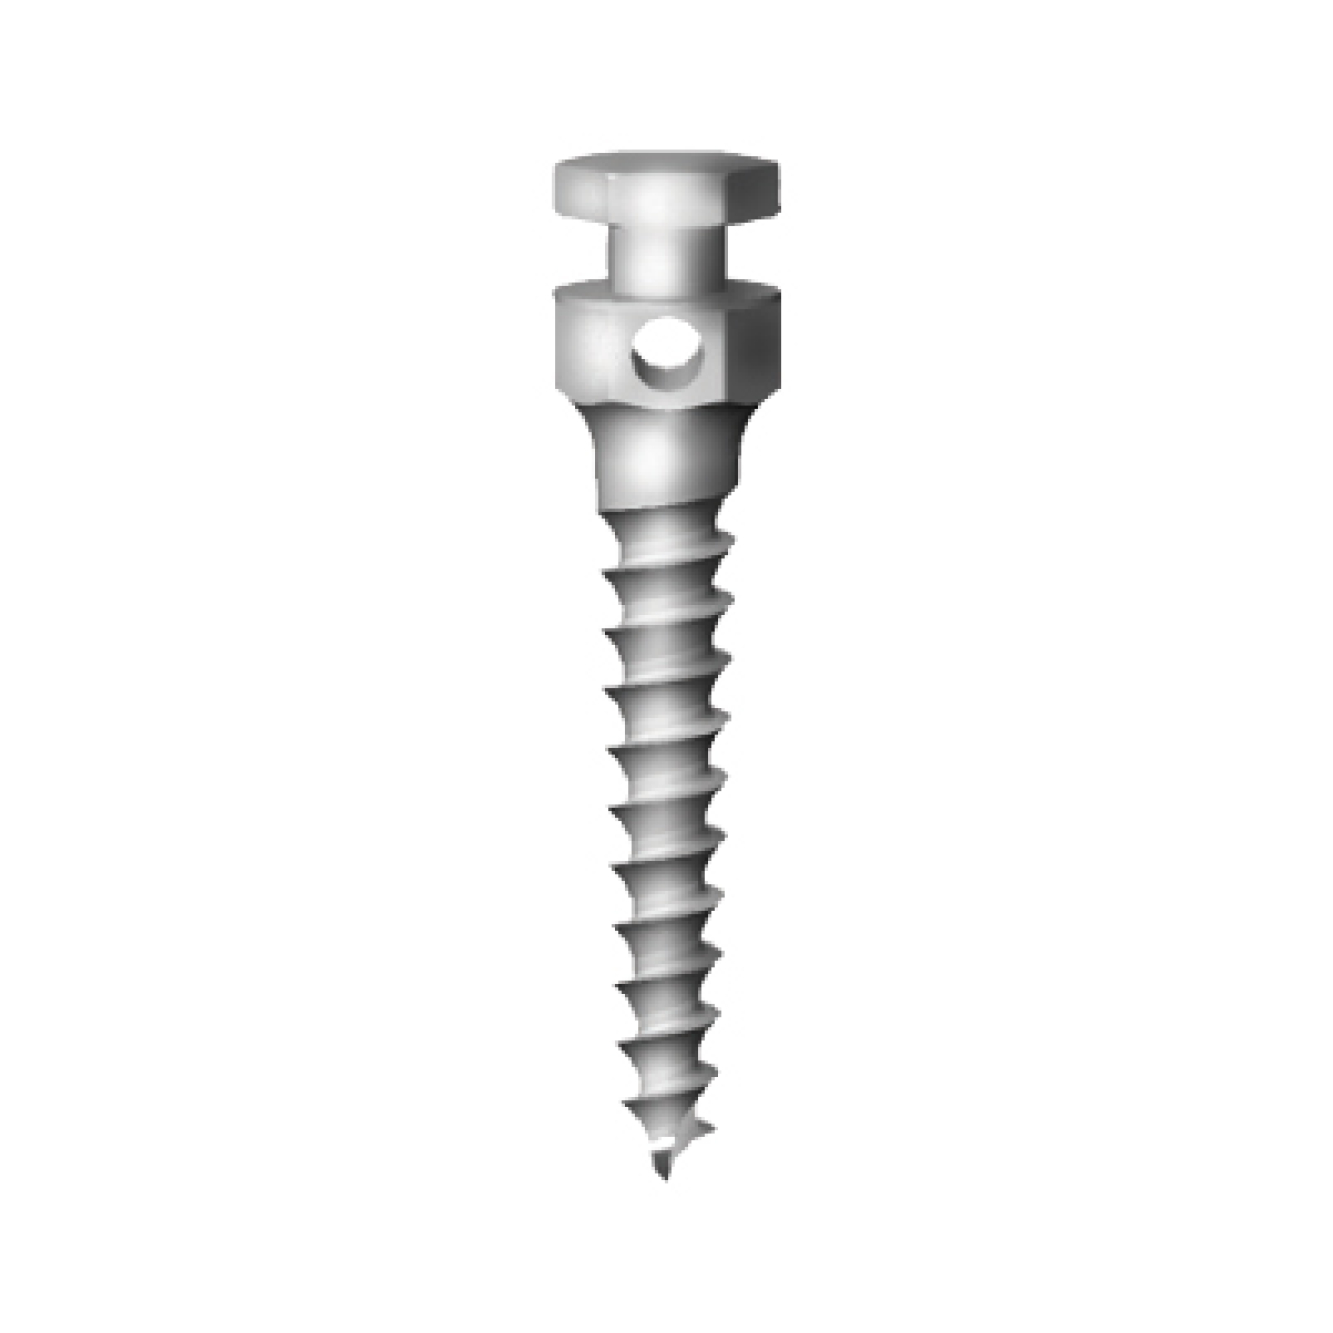 OS-L-14-010 Стоматологический ортодонтический винт для эластичной тяги и проволоки, диаметр 1.4 мм, длина 10 мм, Mr.Curette Tech, Южная Корея